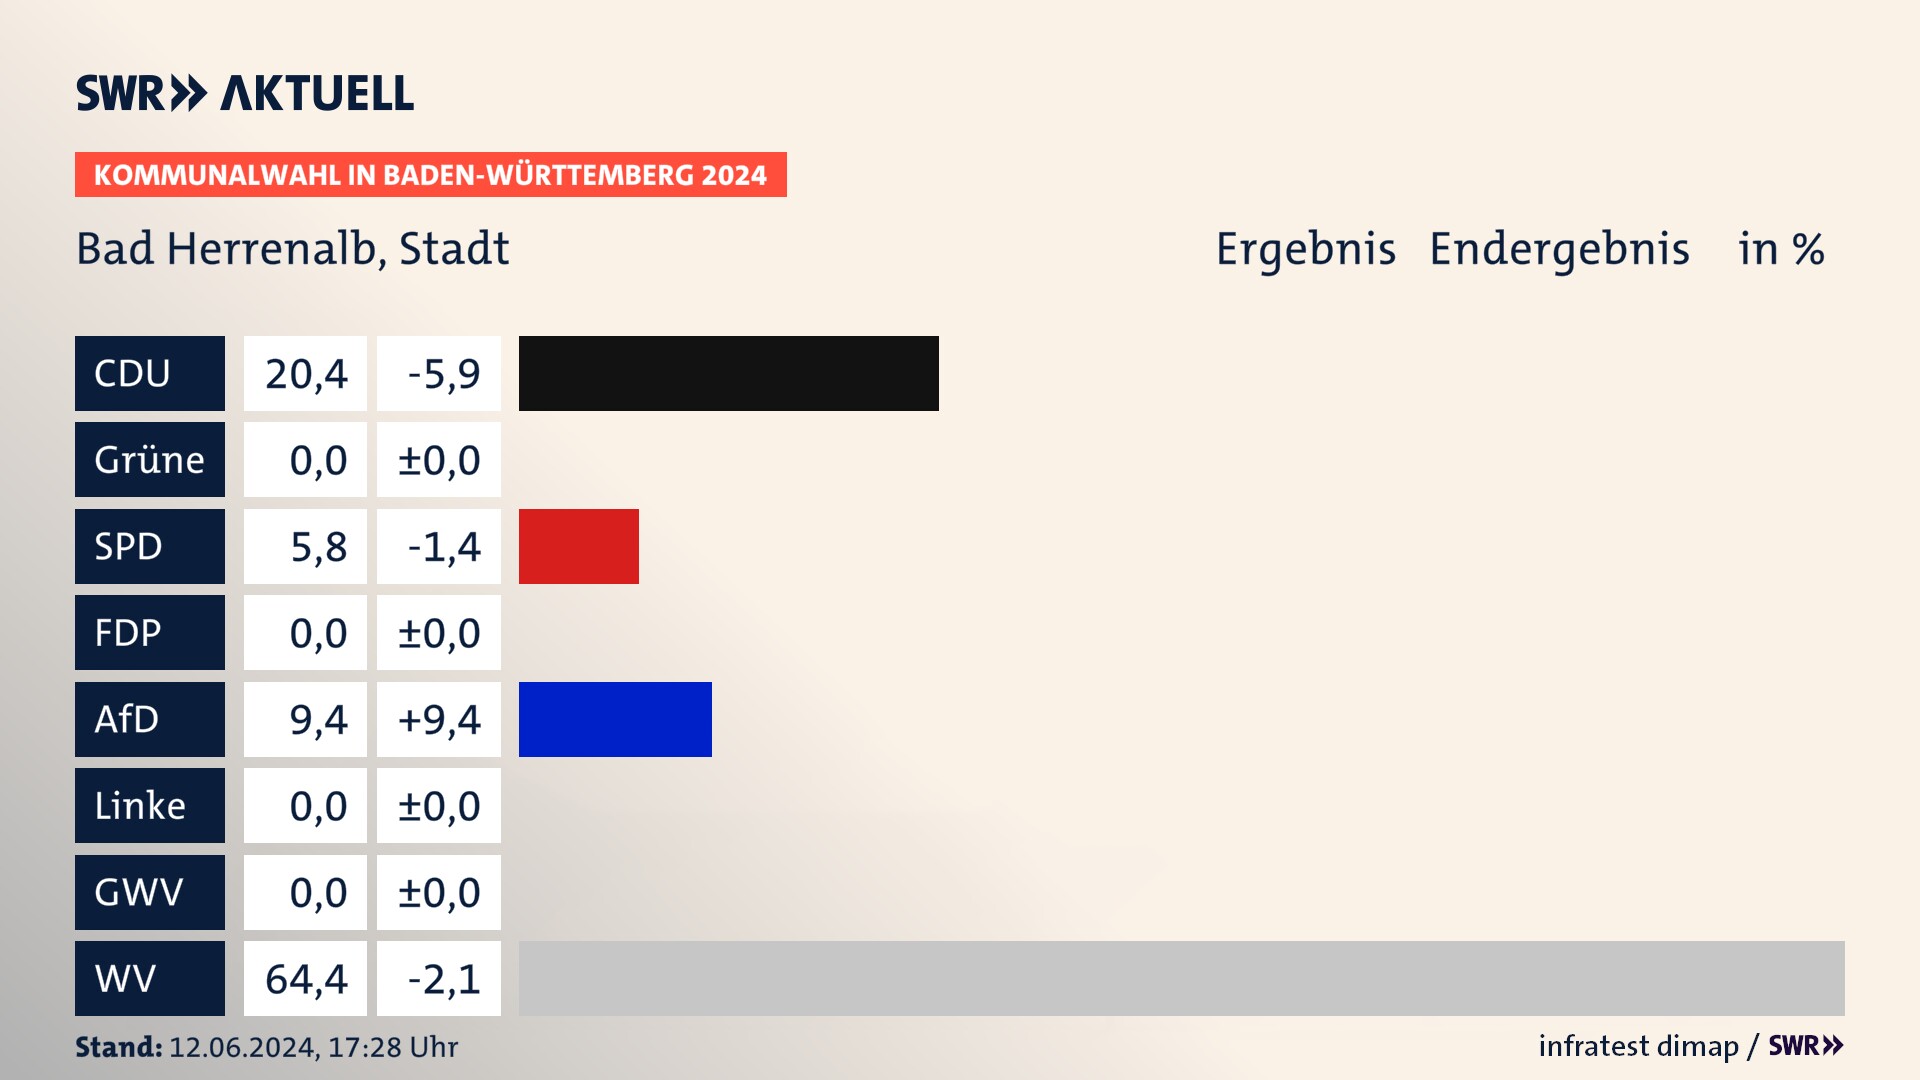 Kommunalwahl 2024 Endergebnis Zweitstimme für Bad Herrenalb. In Bad Herrenalb, Stadt erzielt die CDU 20,4 Prozent der gültigen  Stimmen. Die SPD landet bei 5,8 Prozent. Die AfD erreicht 9,4 Prozent. Die Wählervereinigungen kommen auf 64,4 Prozent.